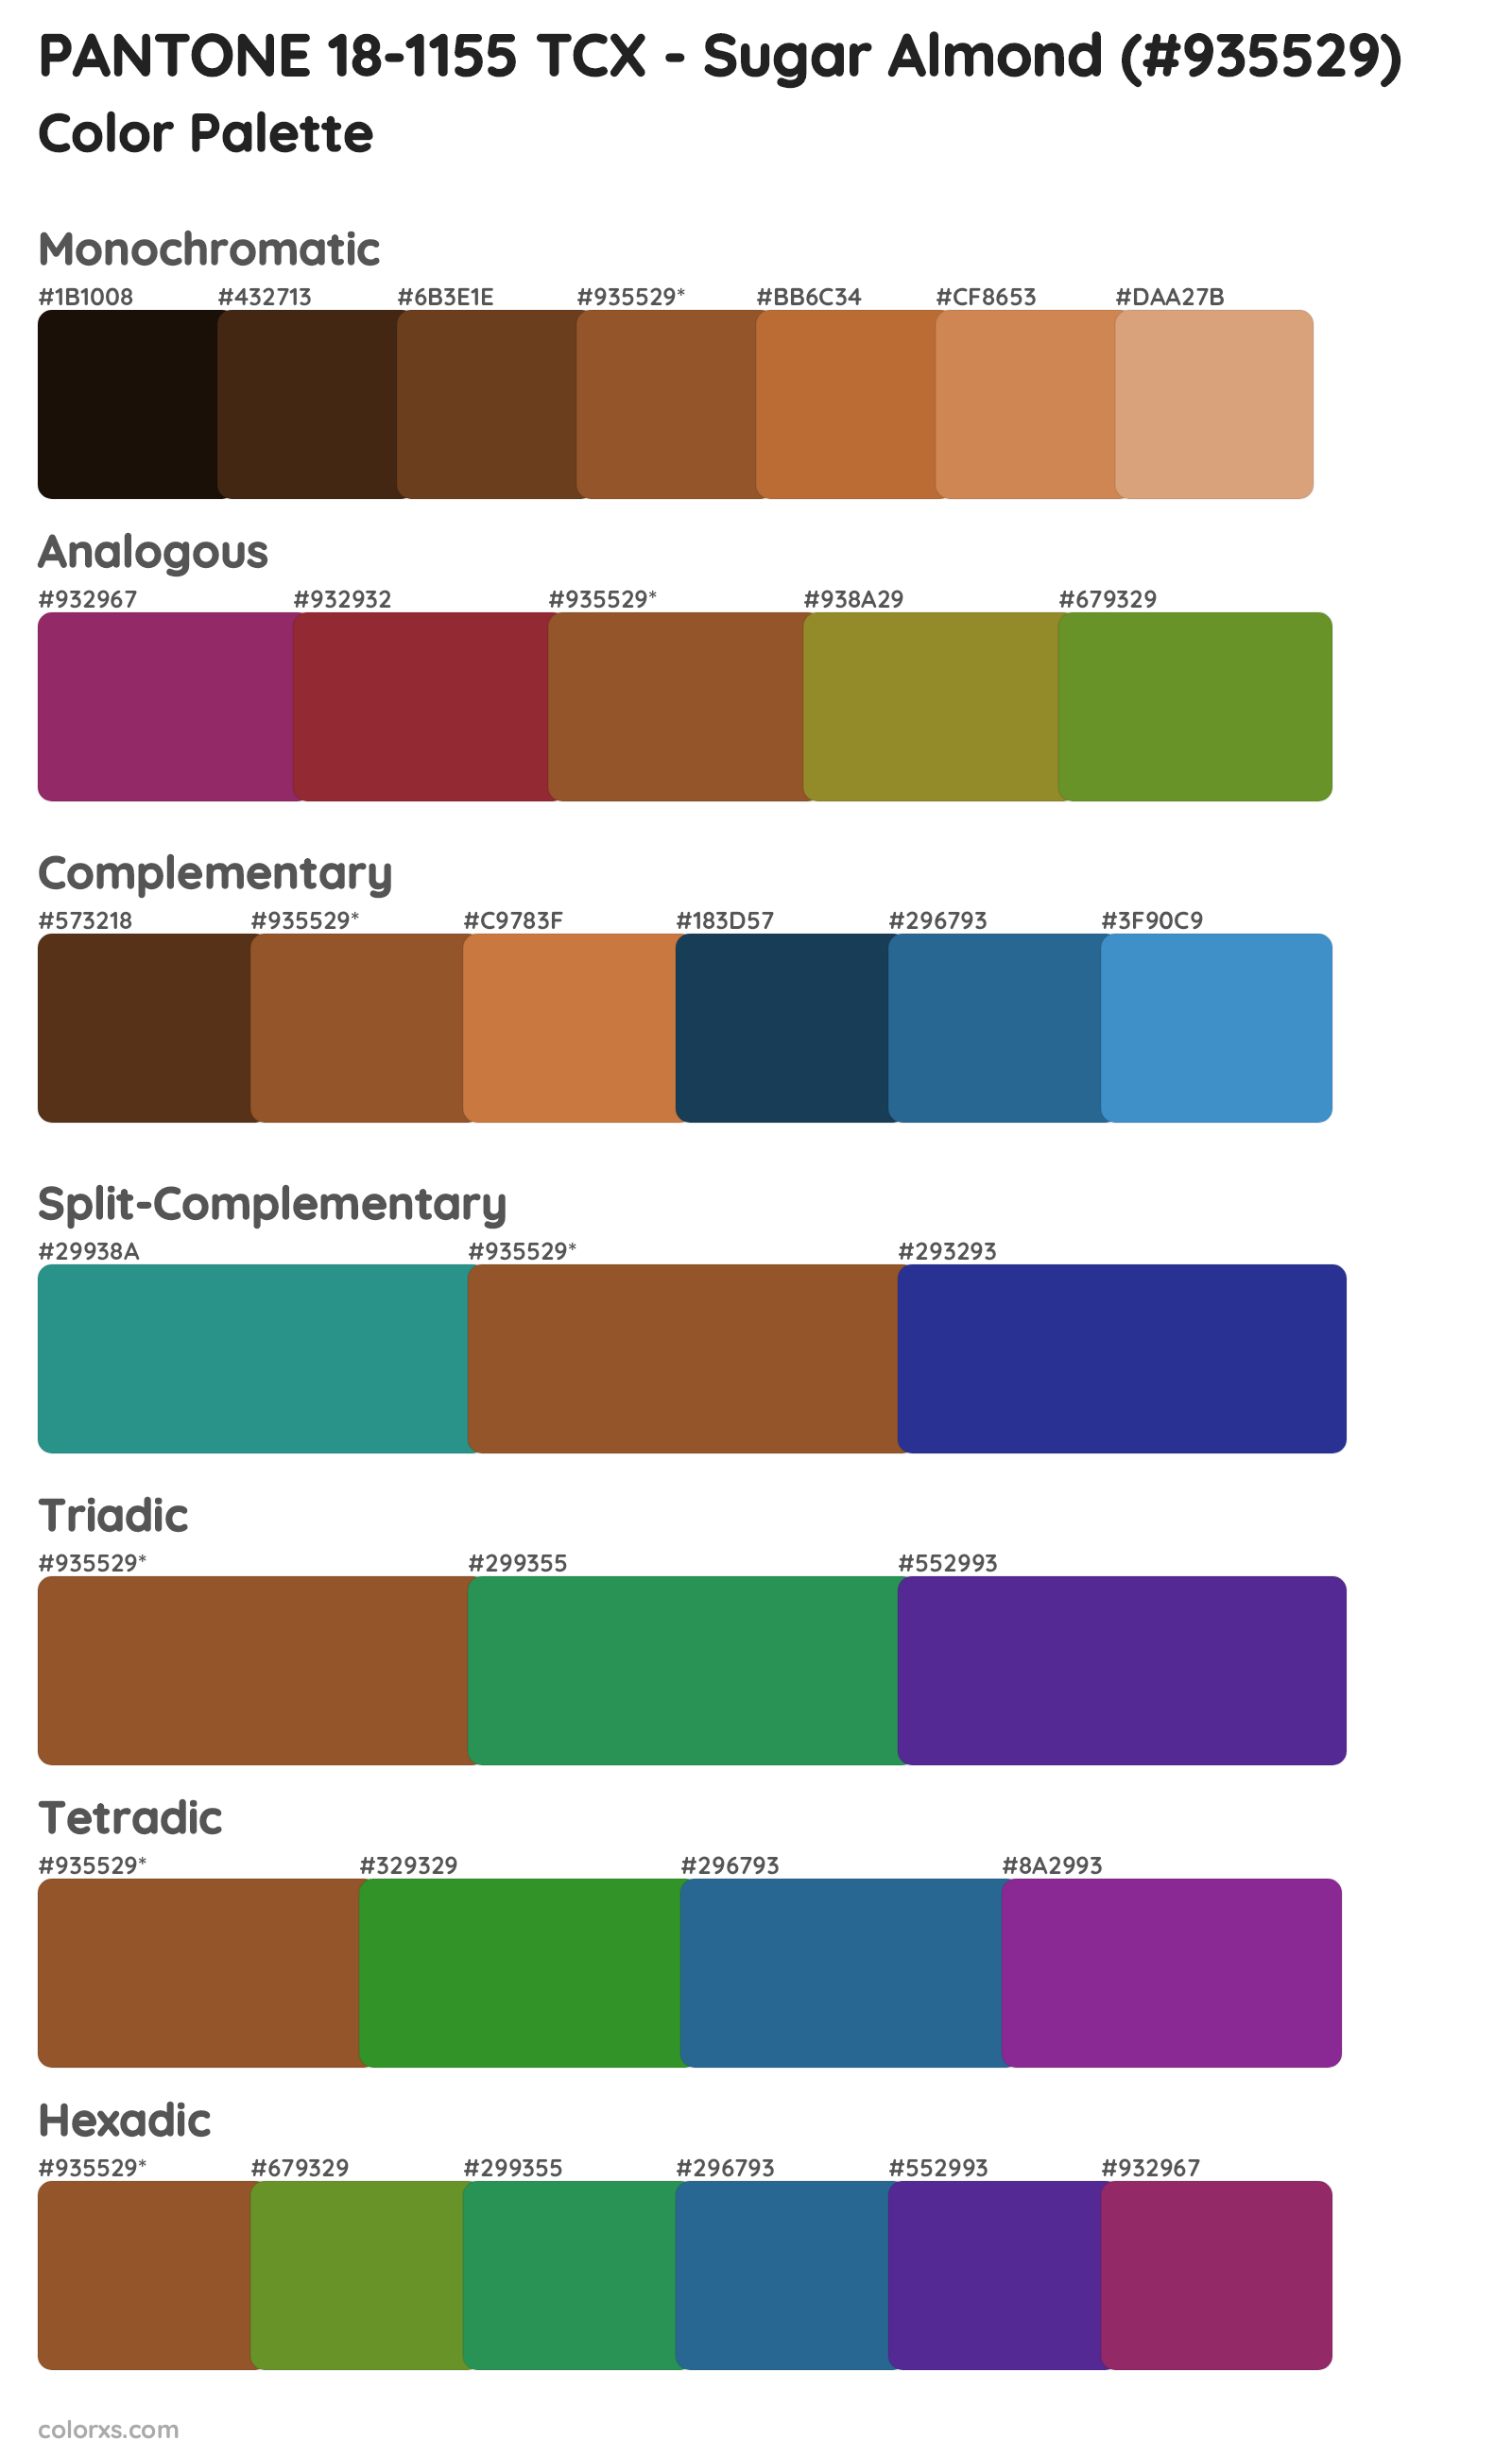 PANTONE 18-1155 TCX - Sugar Almond Color Scheme Palettes